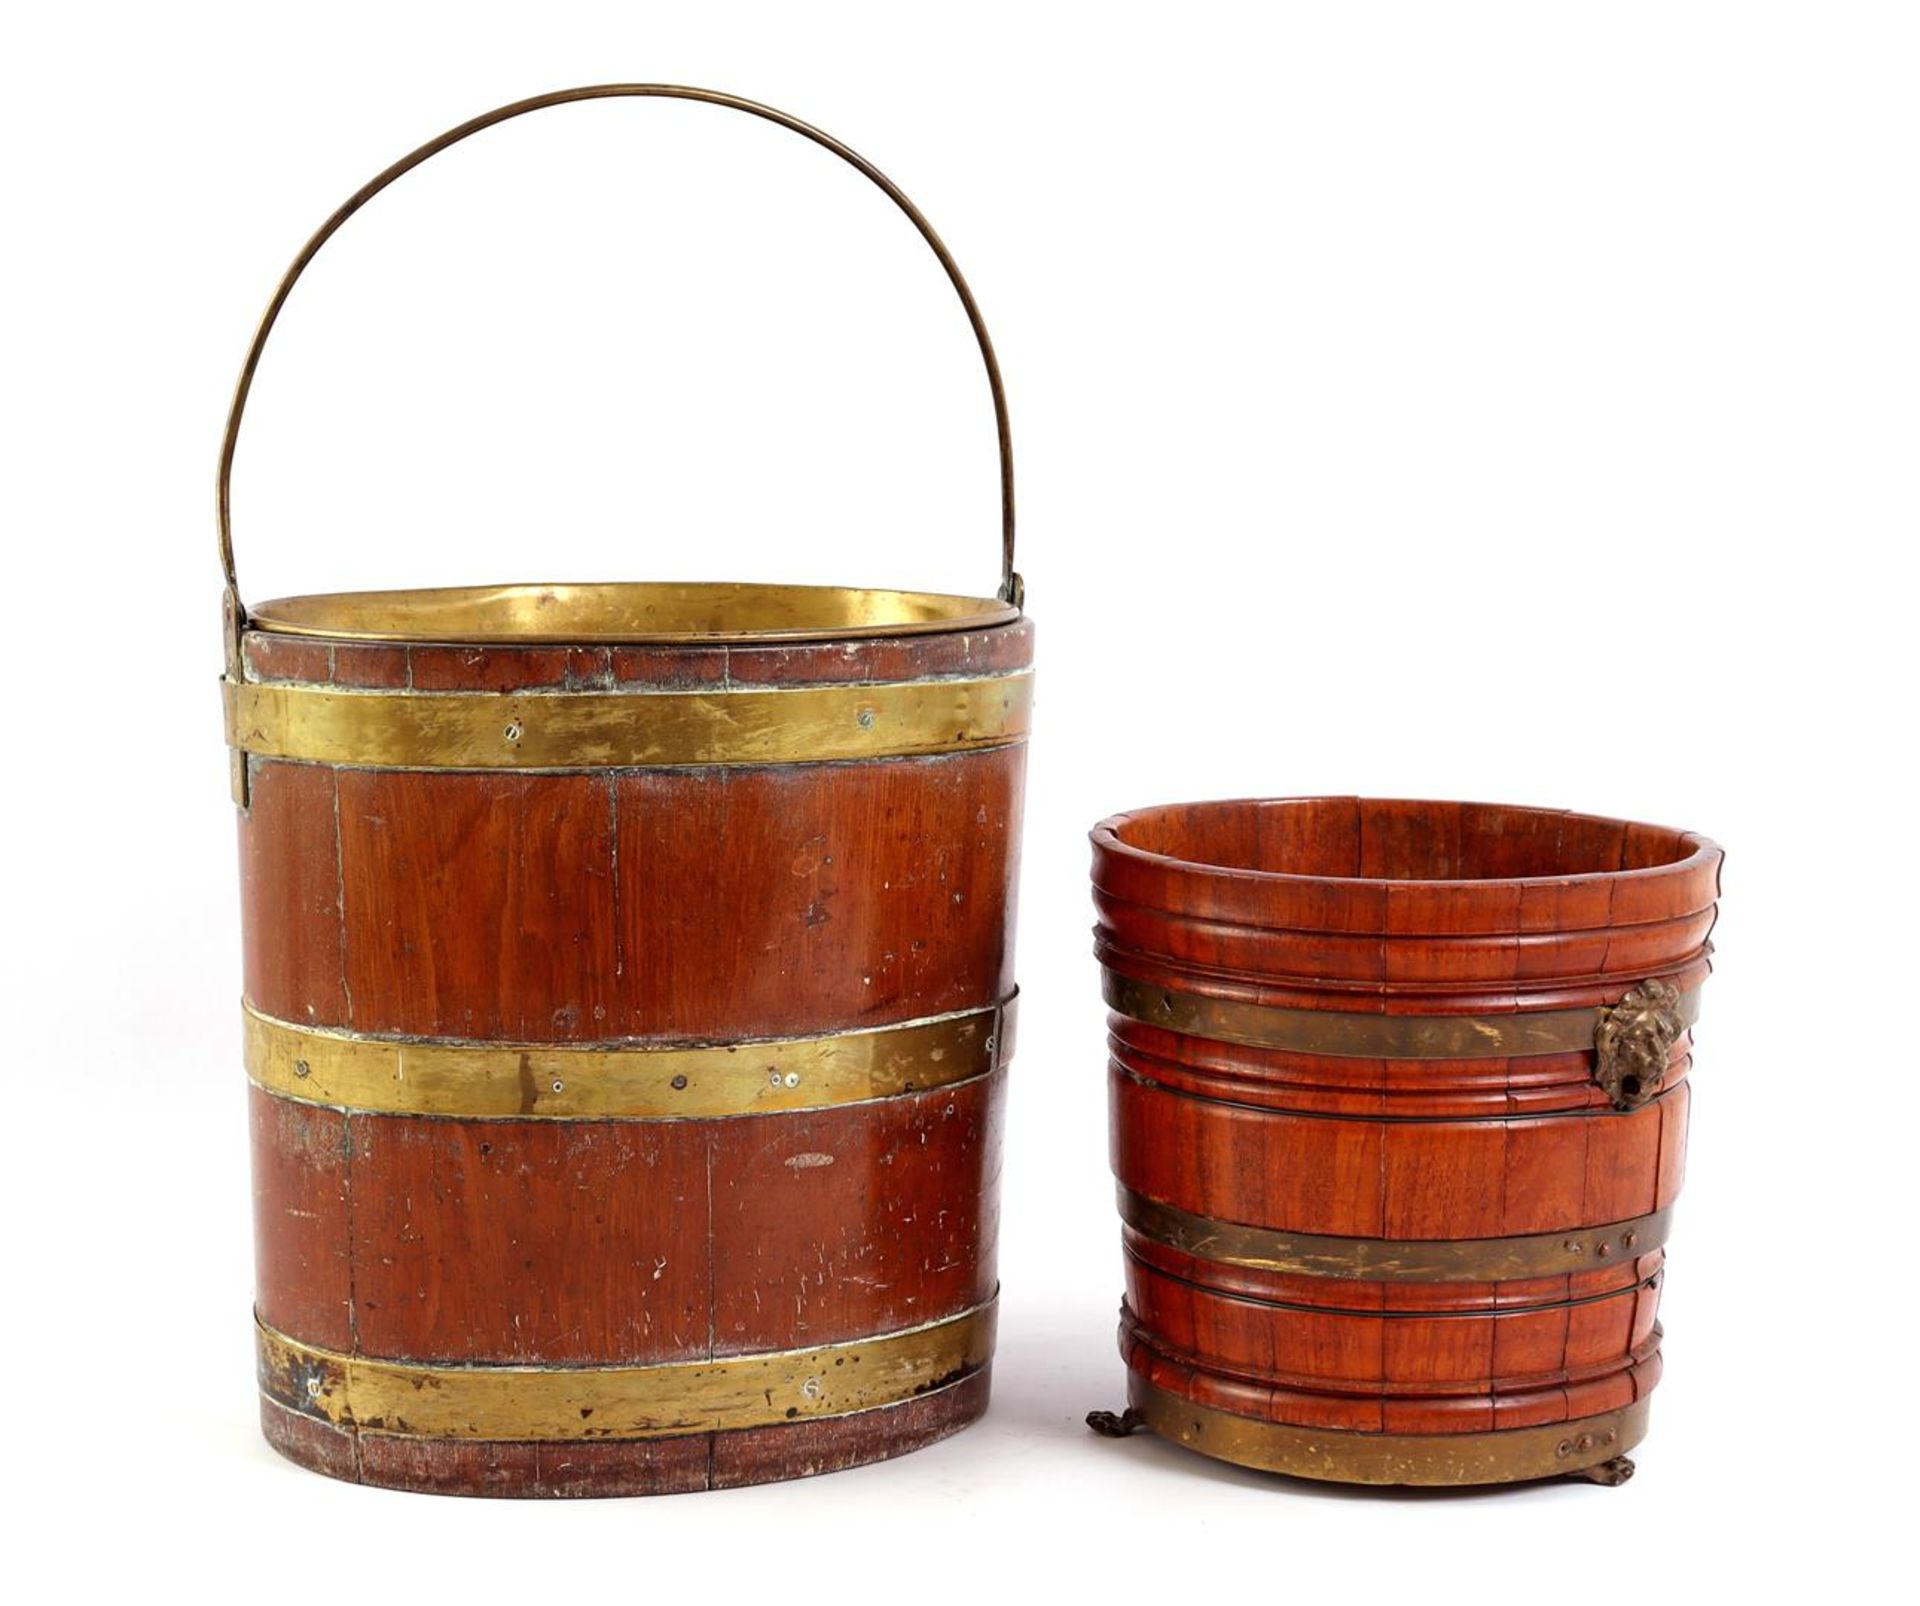 Oval mahogany tub 19th century tea bucket with copper inner tray